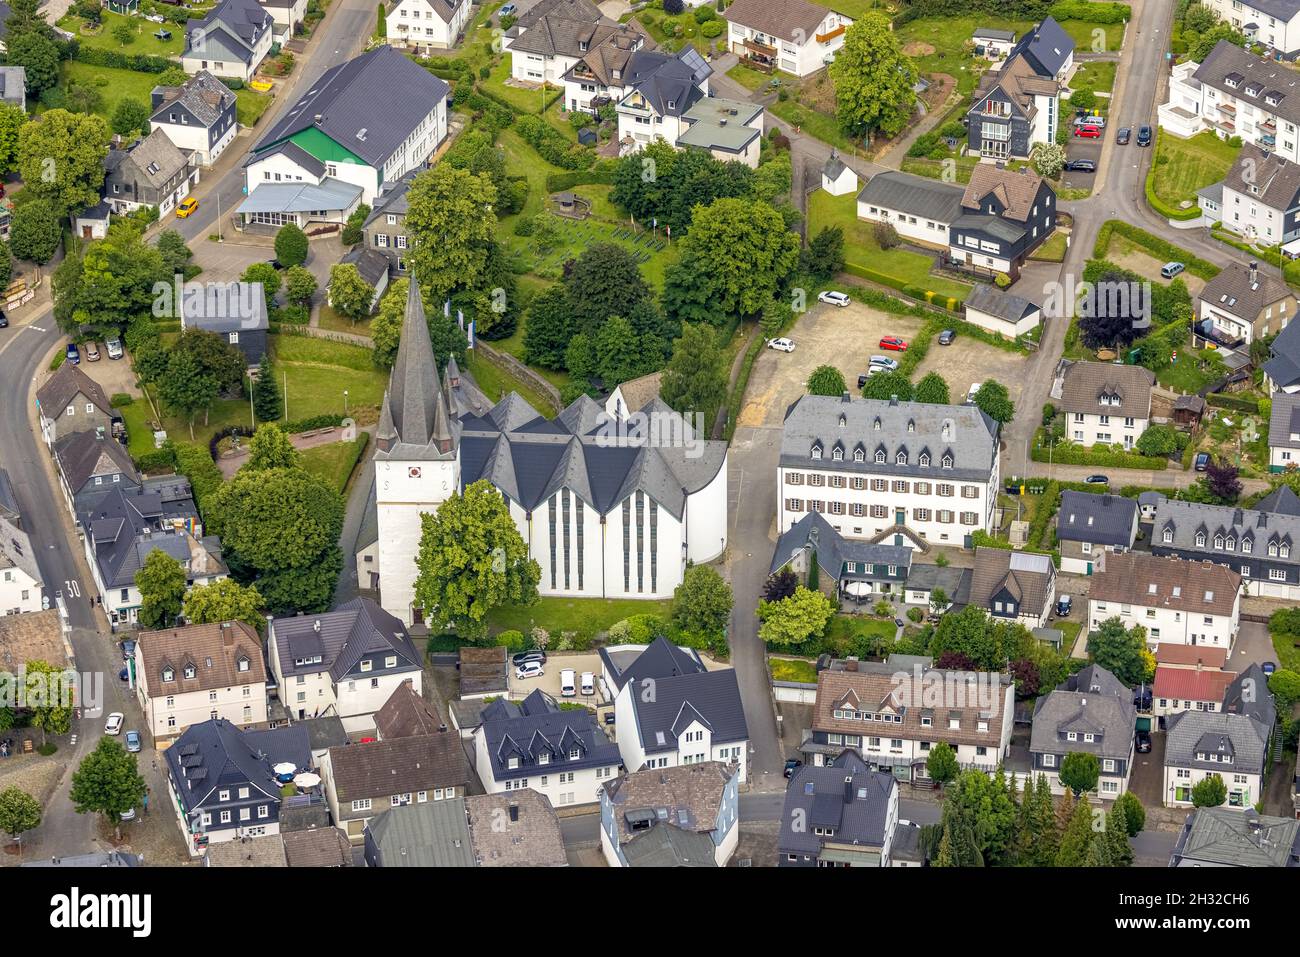 Vue aérienne, église paroissiale de St Clemens, ancien monastère, ancienne abbaye cistercienne, abrite un bureau municipal de construction et une école de musique, Drolshagen, Sauerla Banque D'Images